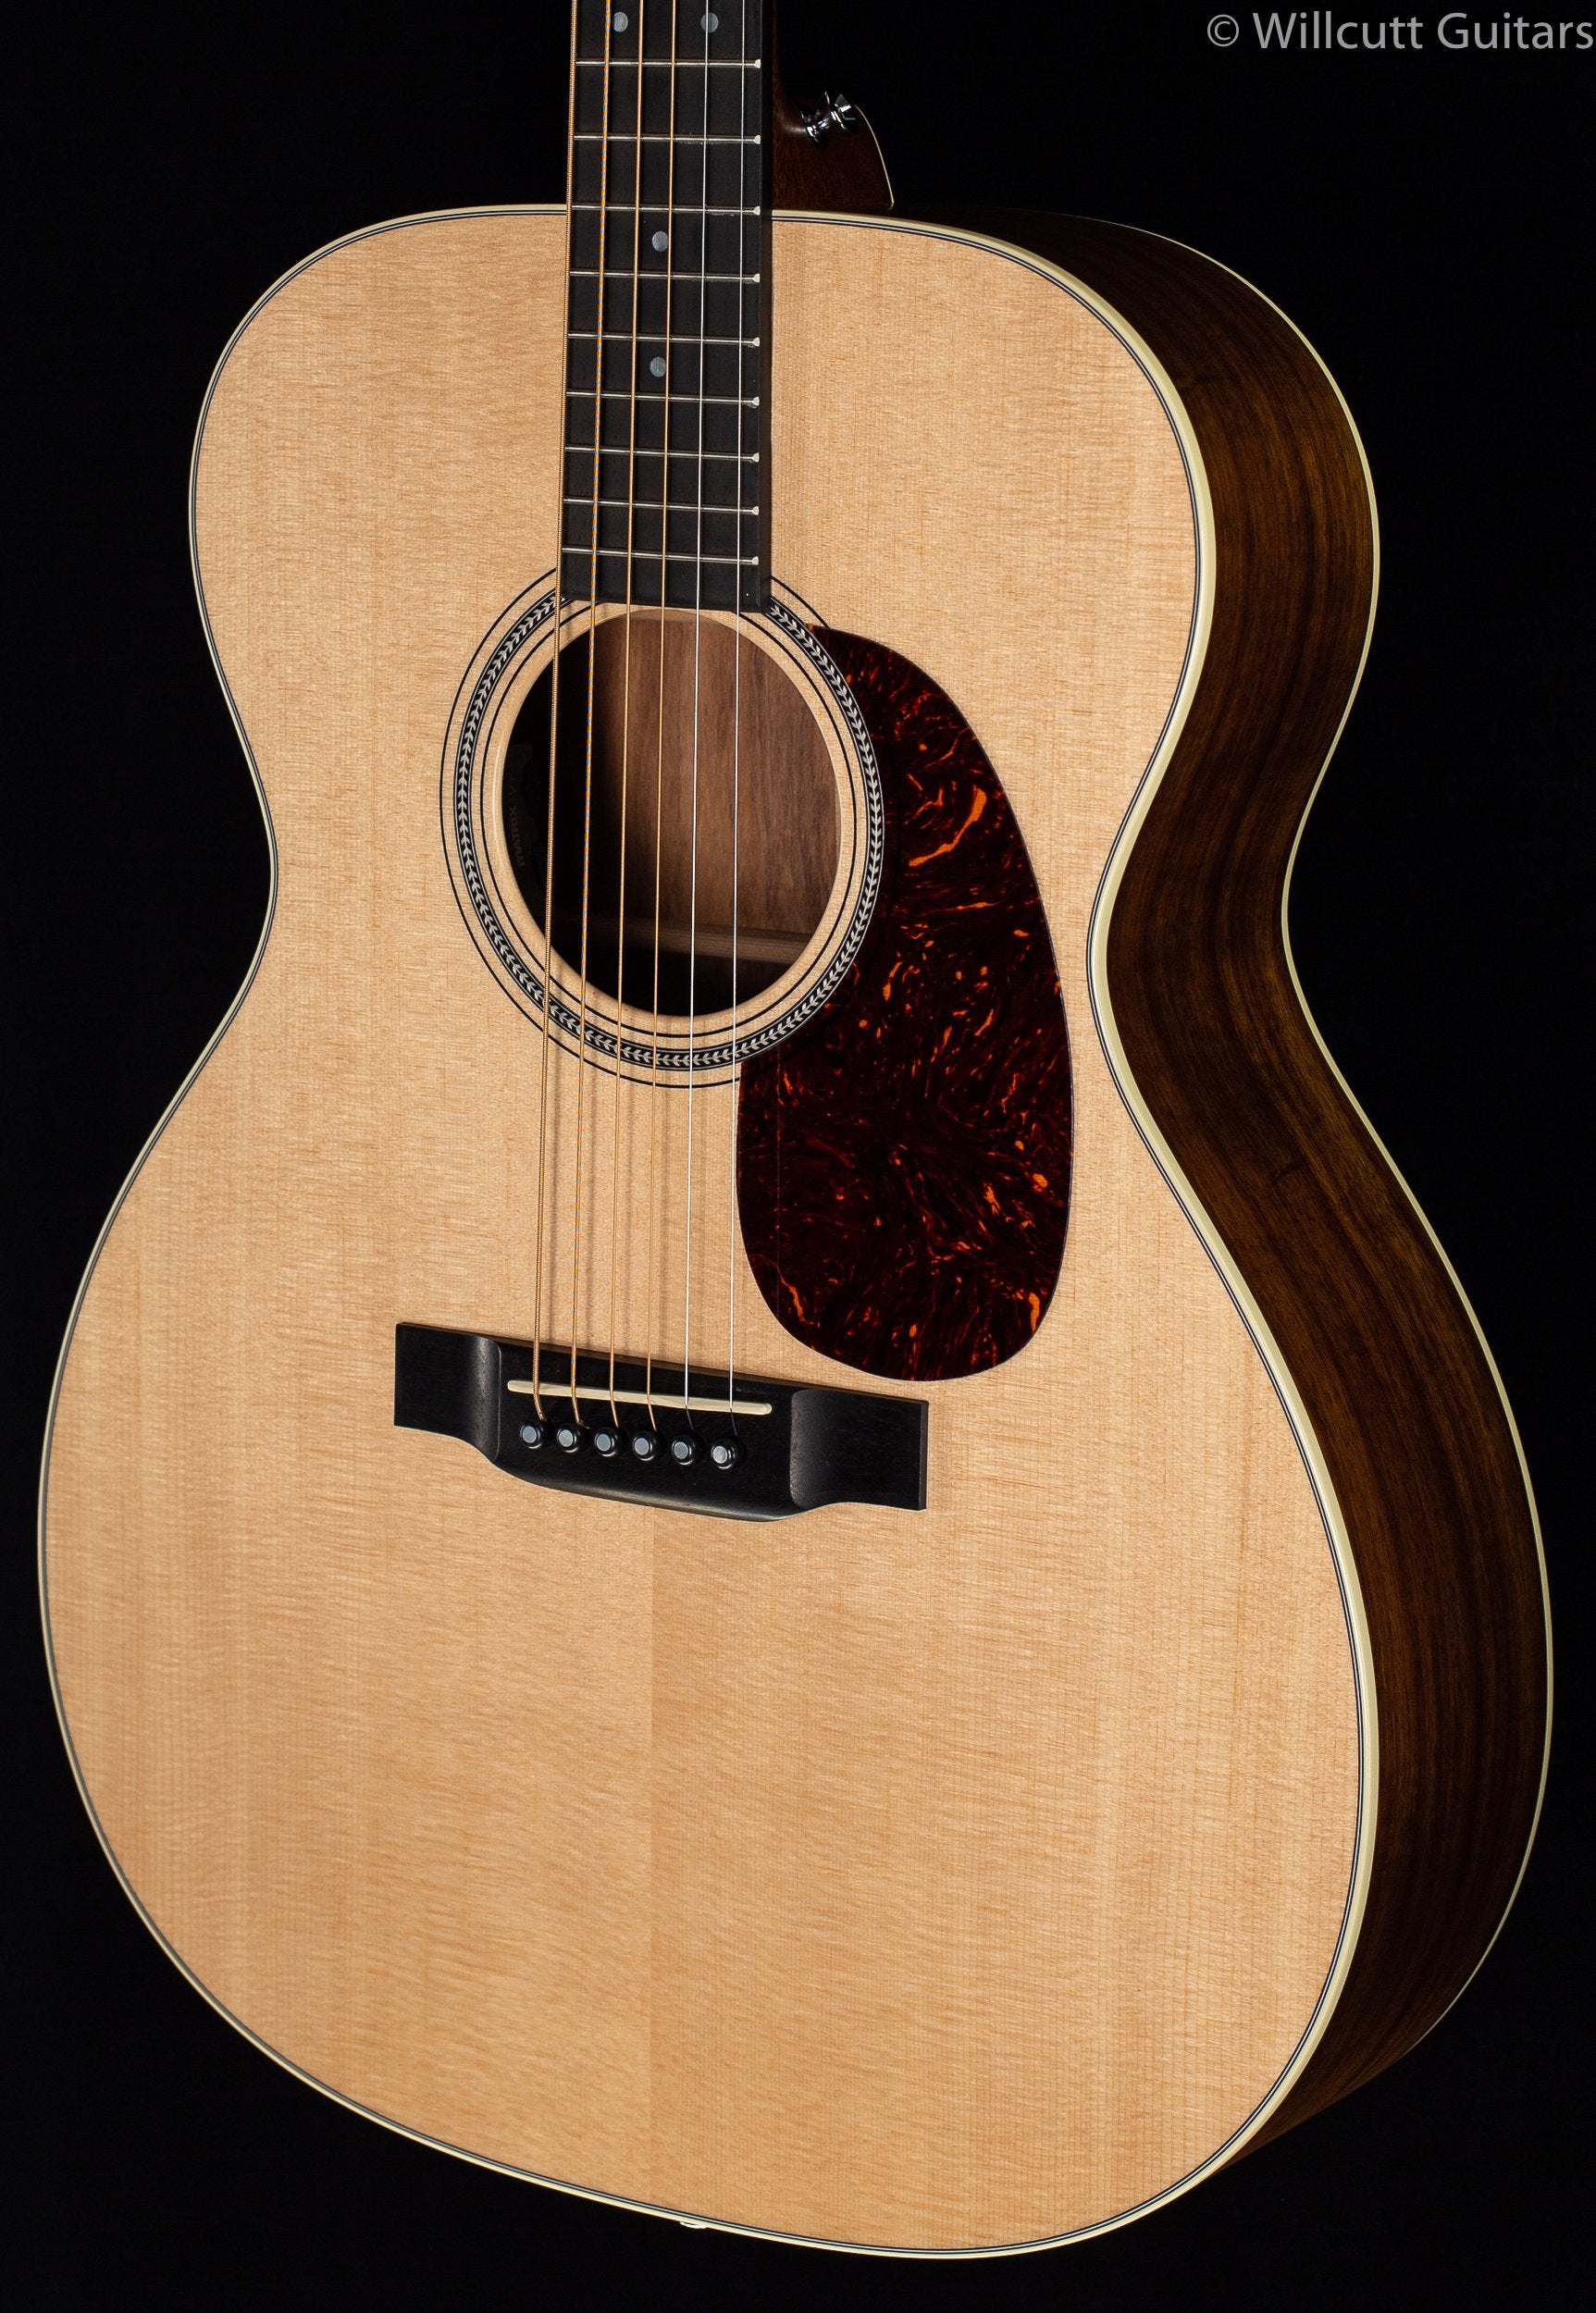 Martin 000-16E Granadillo - Willcutt Guitars